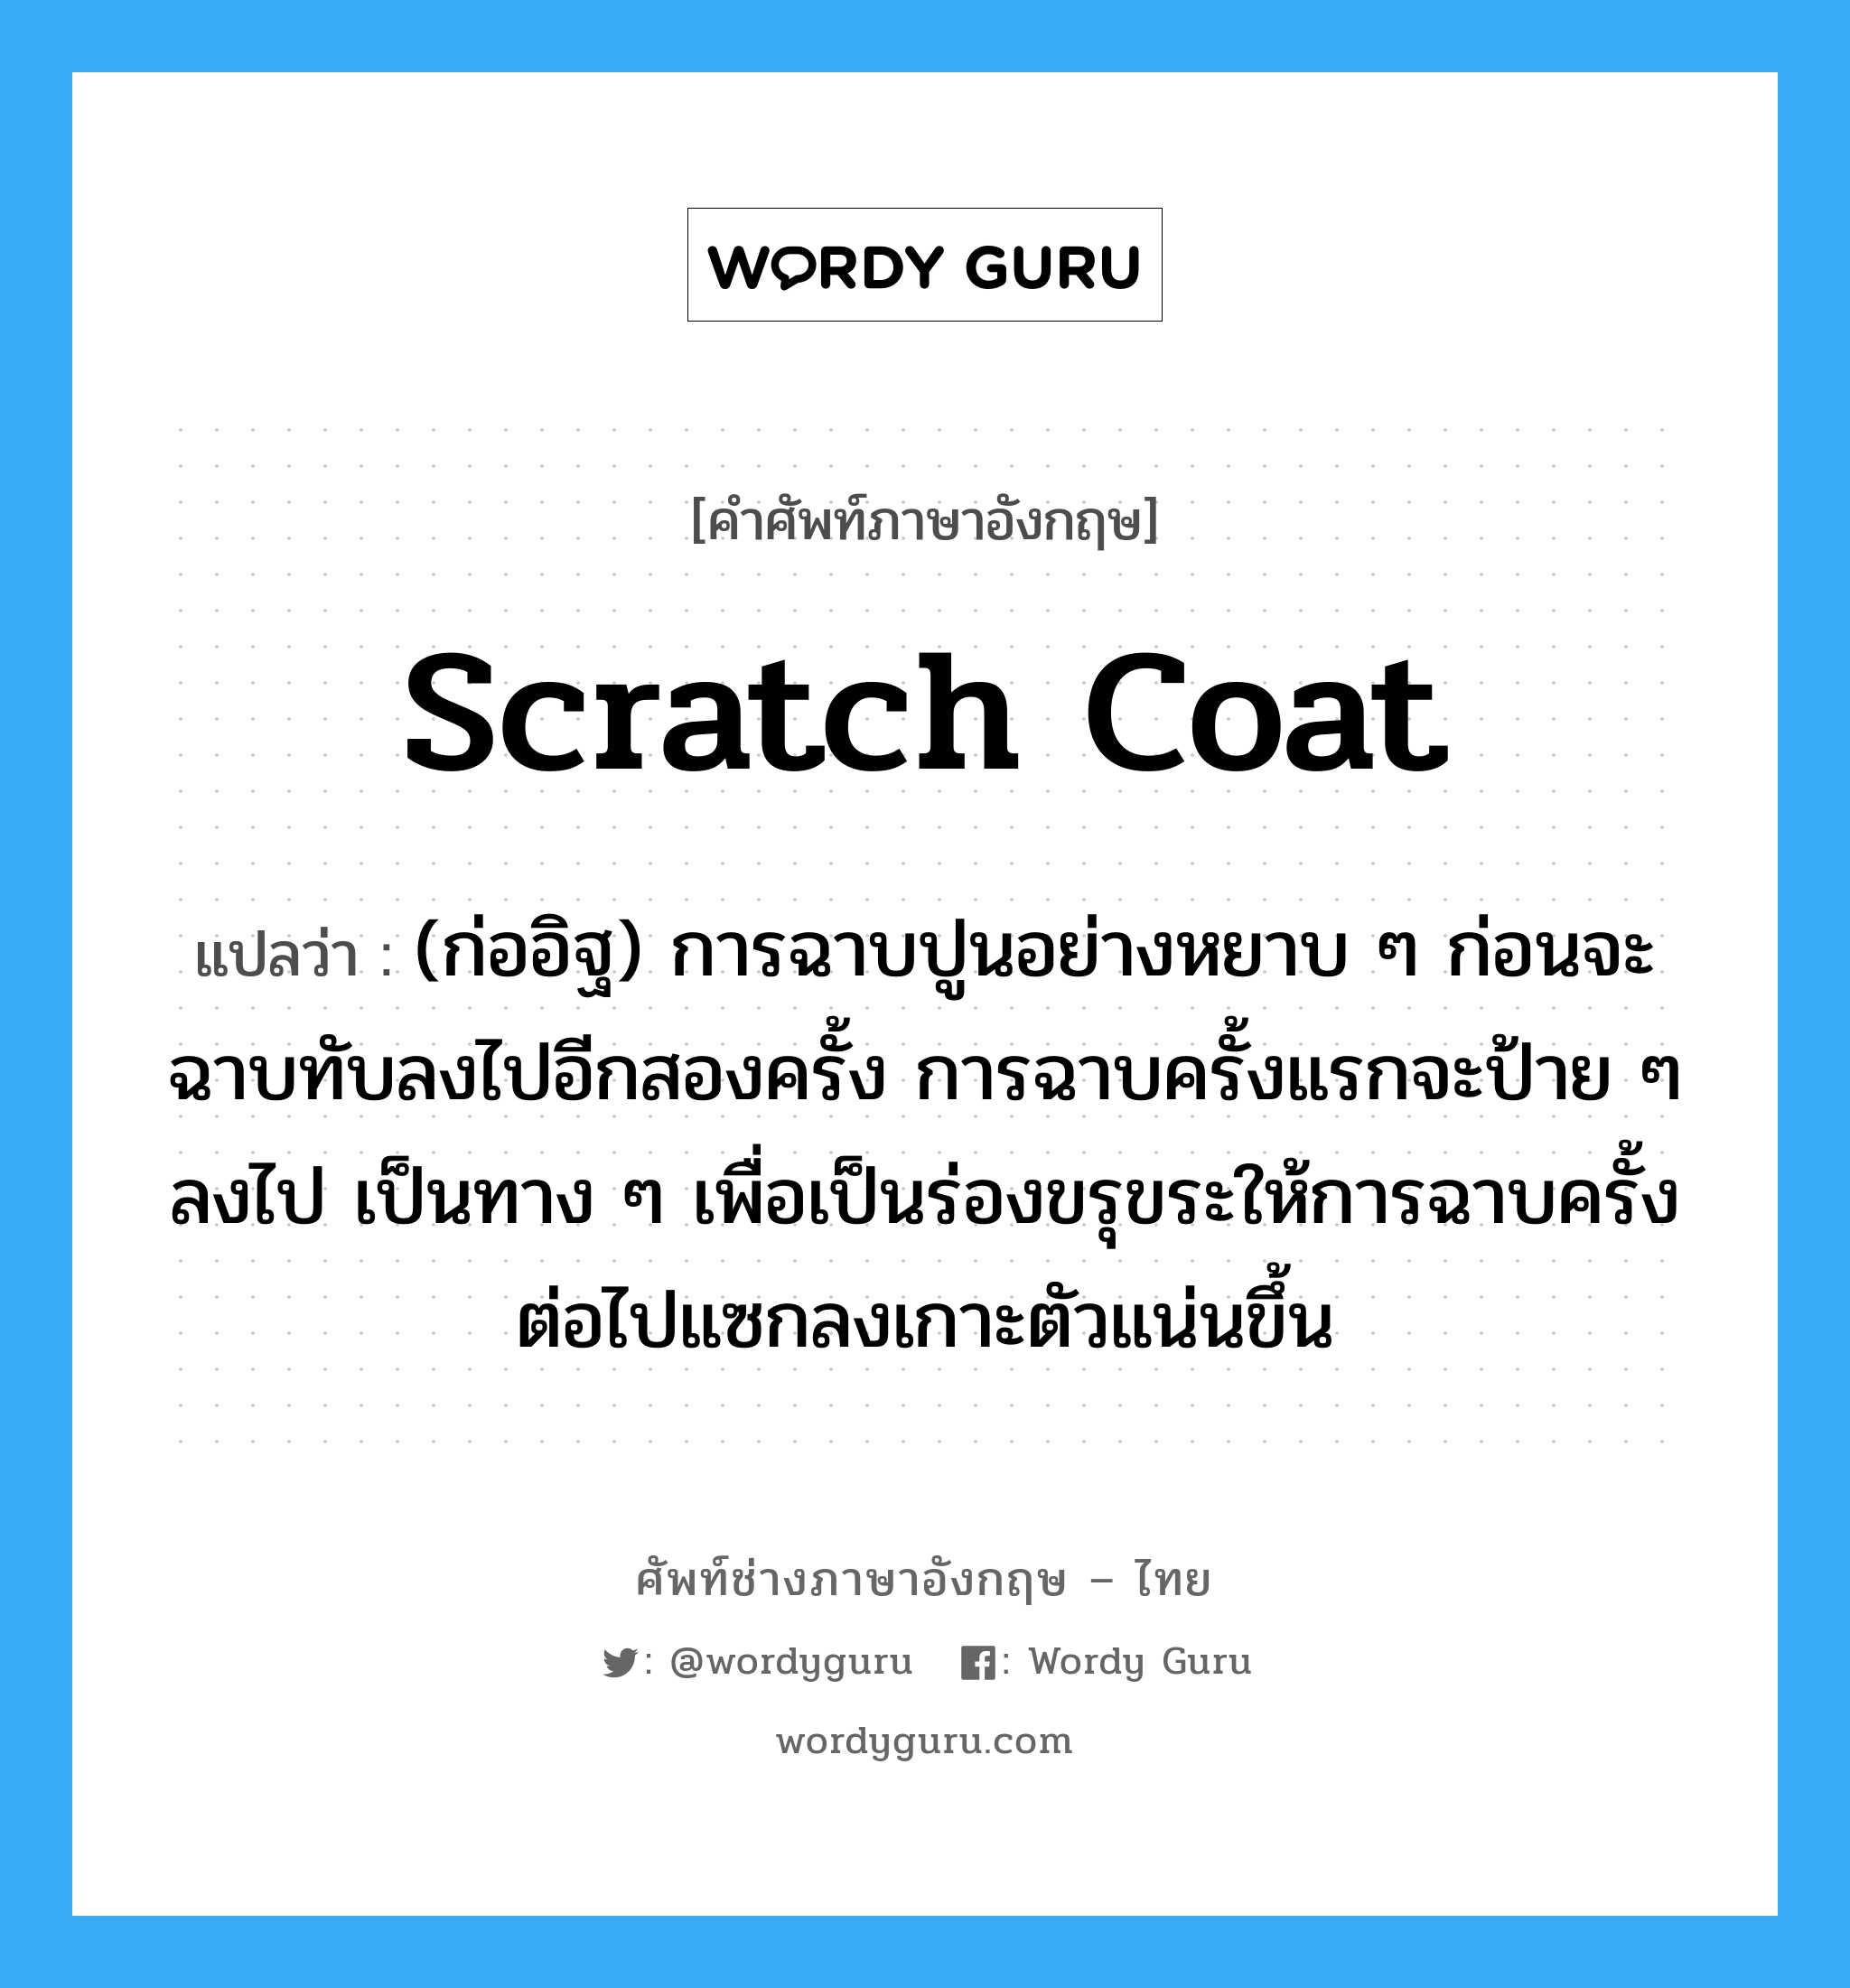 scratch coat แปลว่า?, คำศัพท์ช่างภาษาอังกฤษ - ไทย scratch coat คำศัพท์ภาษาอังกฤษ scratch coat แปลว่า (ก่ออิฐ) การฉาบปูนอย่างหยาบ ๆ ก่อนจะฉาบทับลงไปอีกสองครั้ง การฉาบครั้งแรกจะป้าย ๆ ลงไป เป็นทาง ๆ เพื่อเป็นร่องขรุขระให้การฉาบครั้งต่อไปแซกลงเกาะตัวแน่นขึ้น